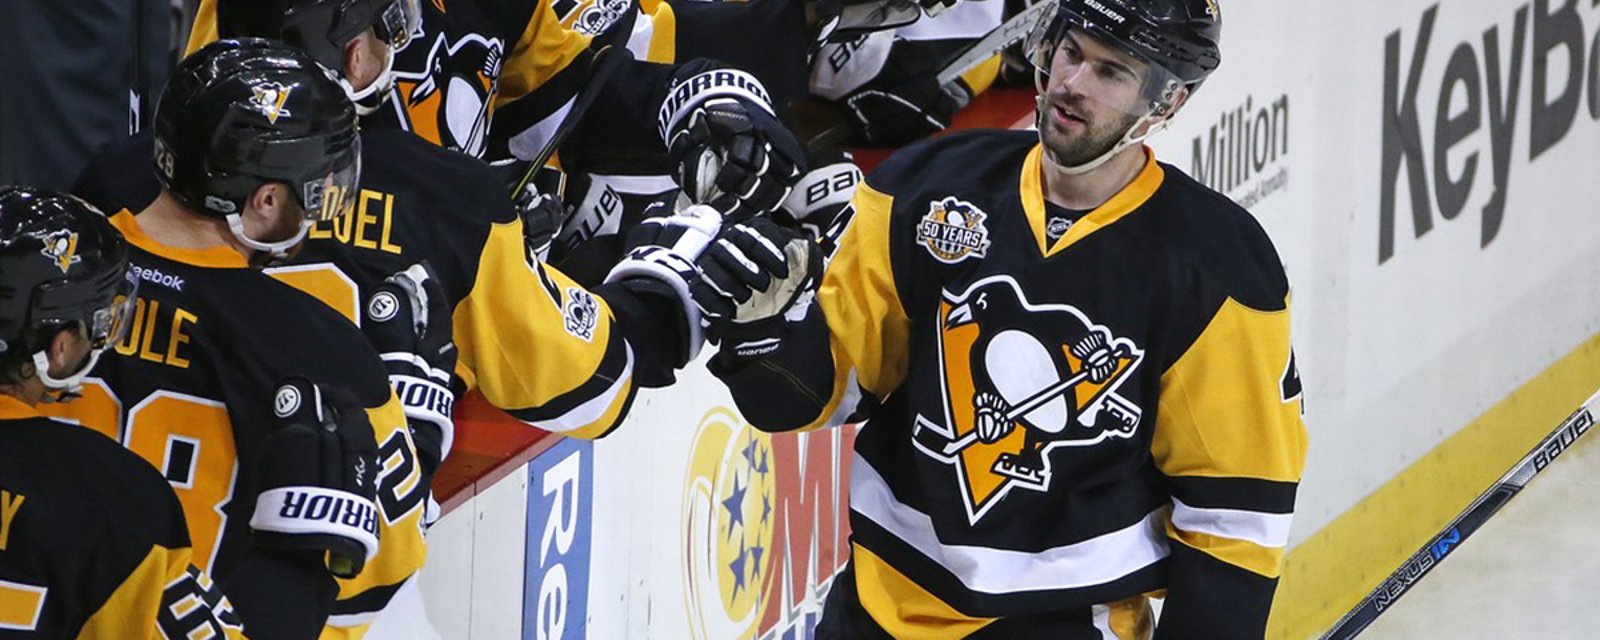 Breaking: Penguins offer update on Schultz’s return